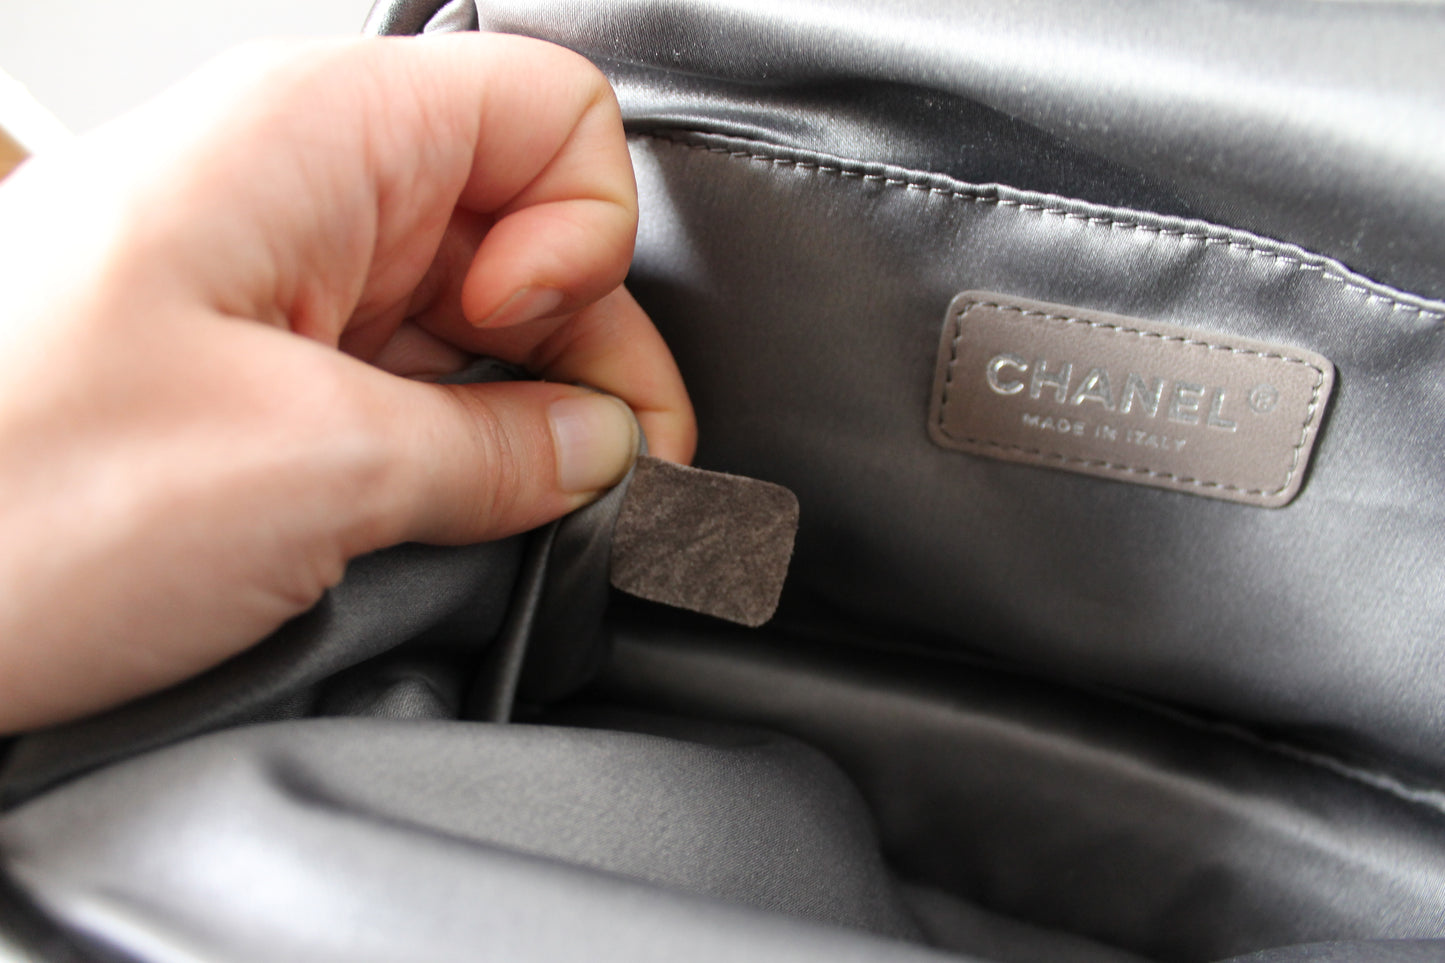 Chanel sac à main années 2000 en cuir